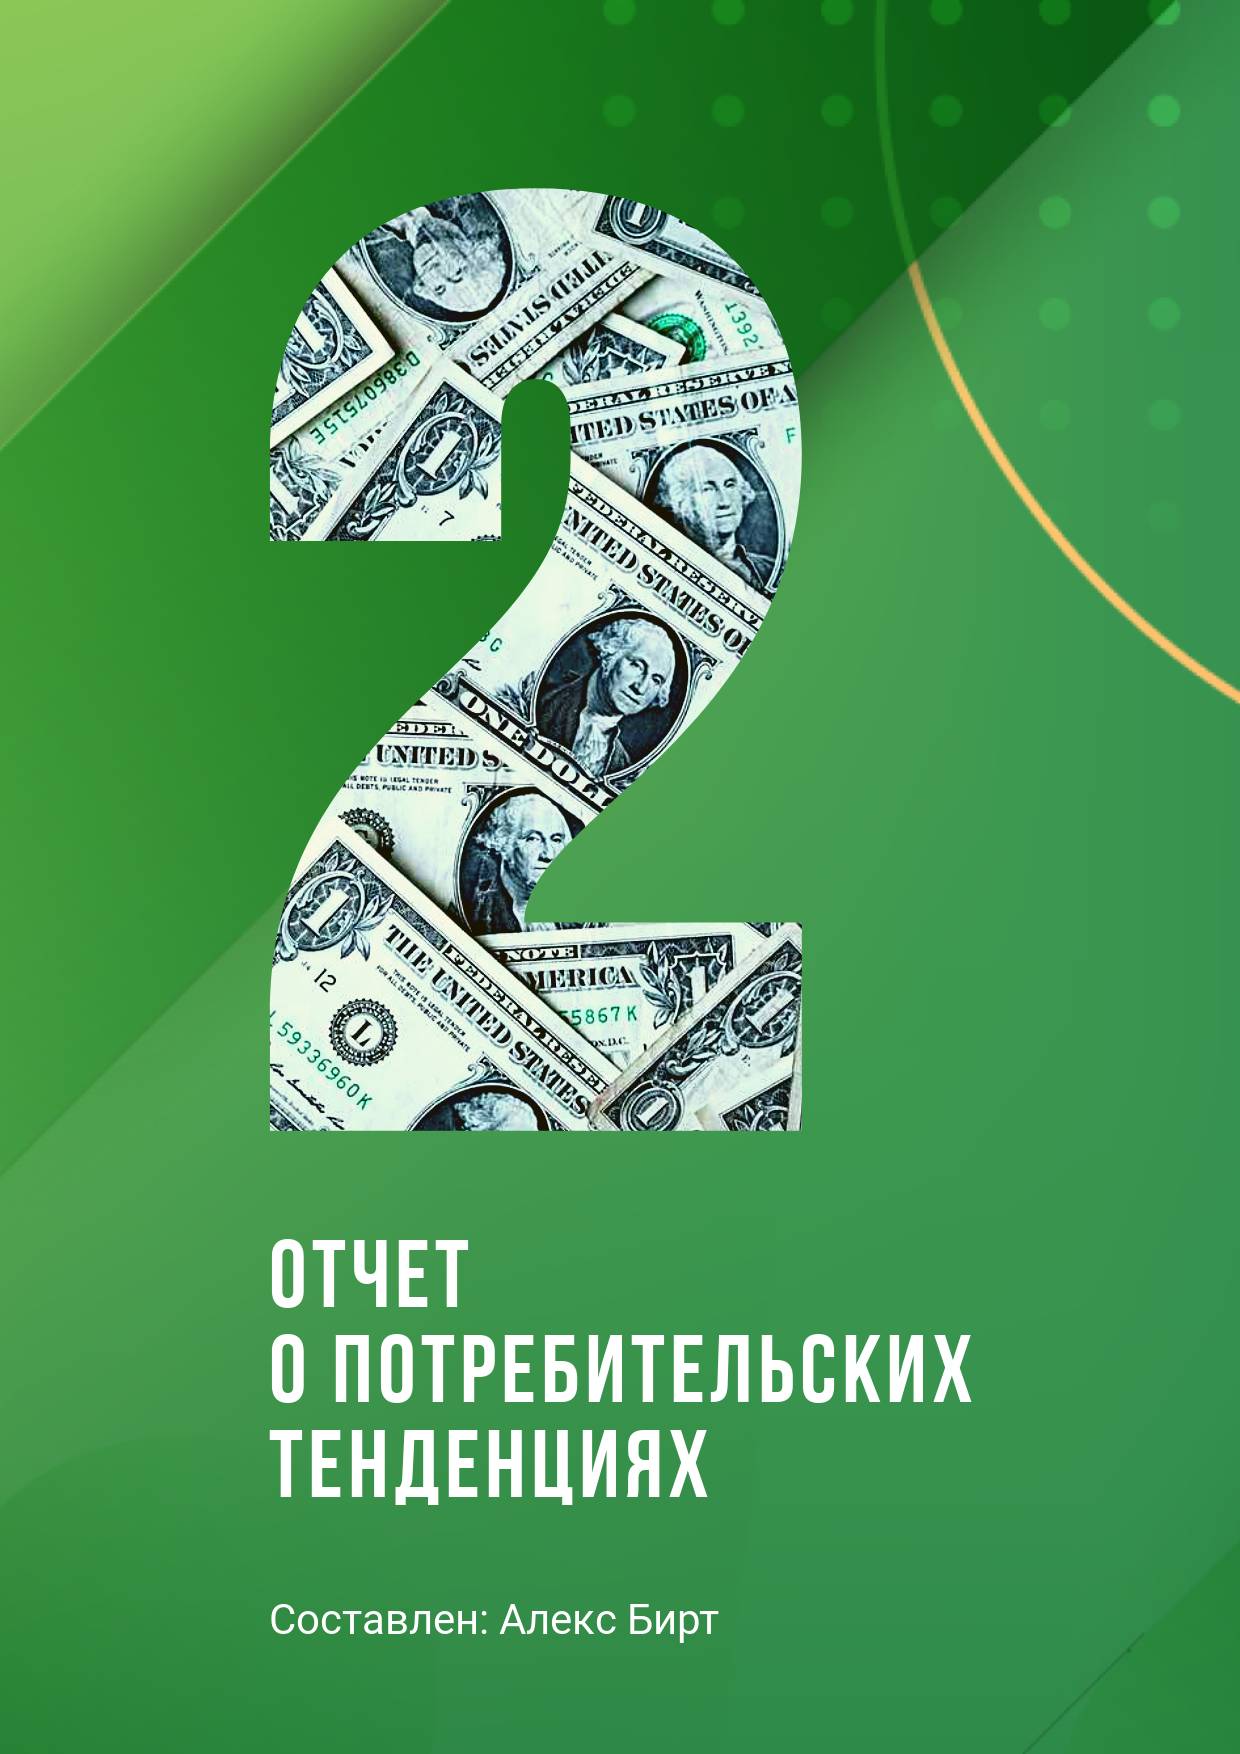 Сочная зеленая обложка для отчета с рисунком в виде долларовых купюр